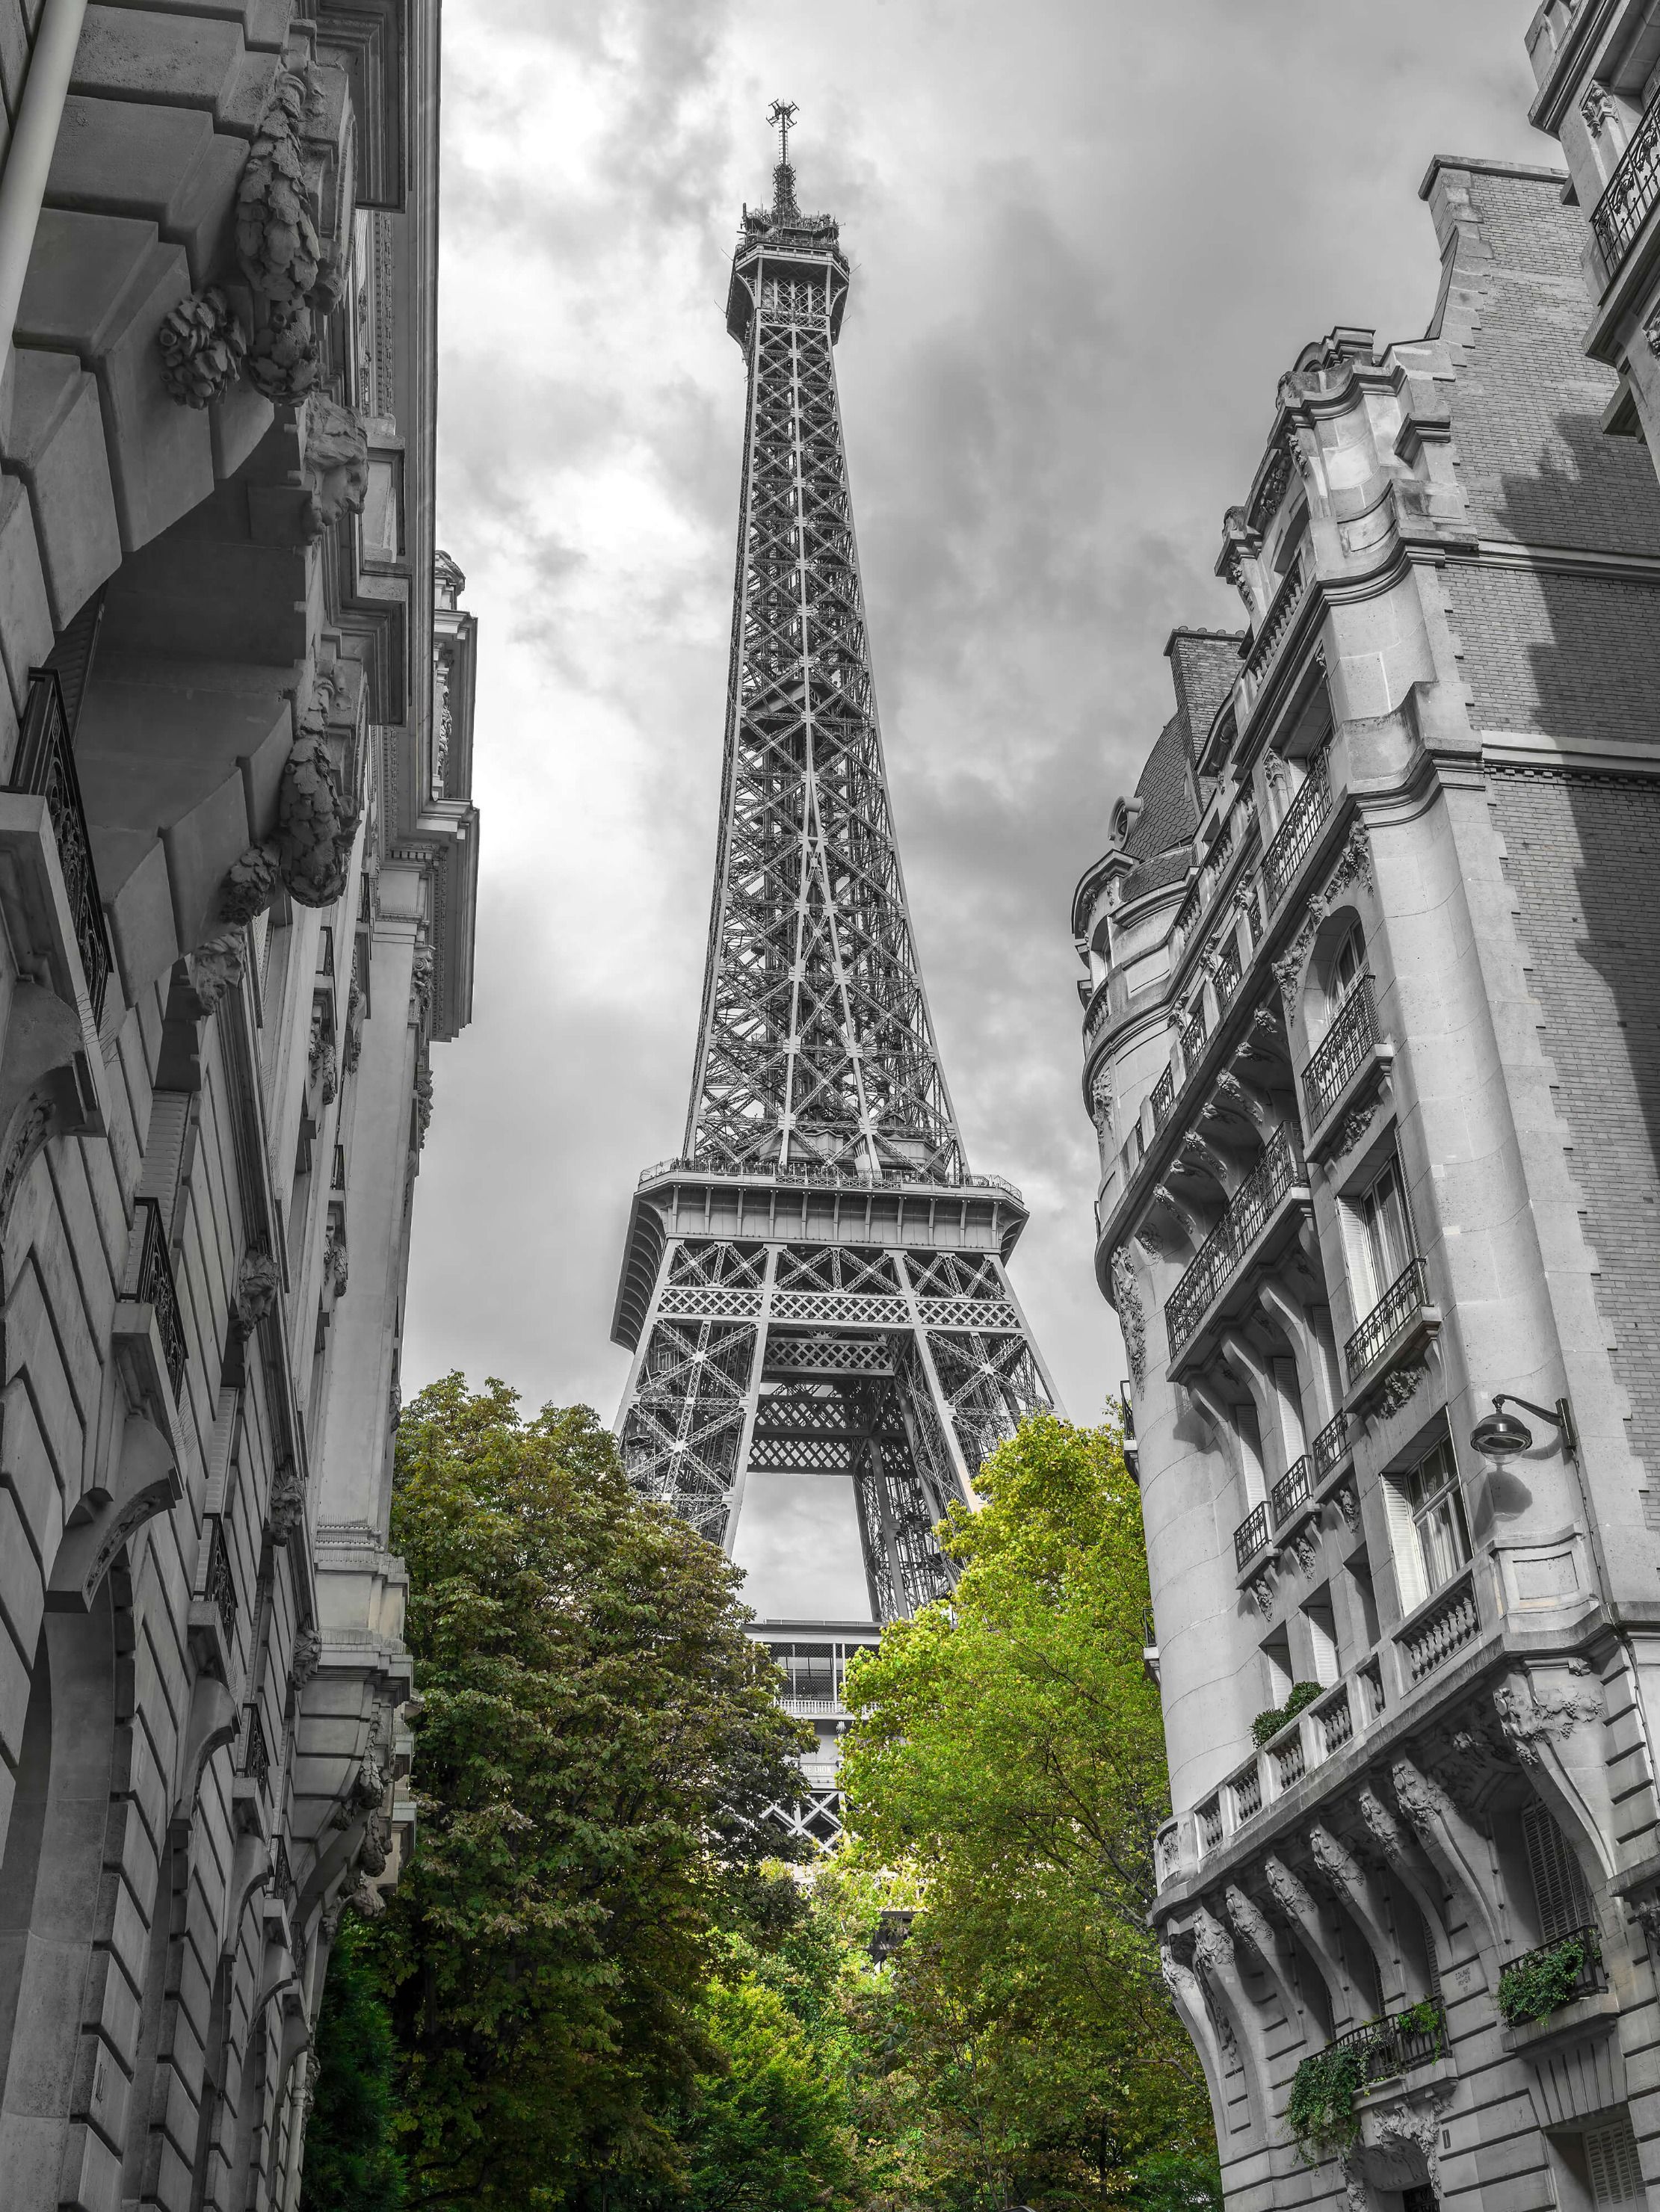  Papel pintado con Torre Eiffel en blanco y negro - Pasillo